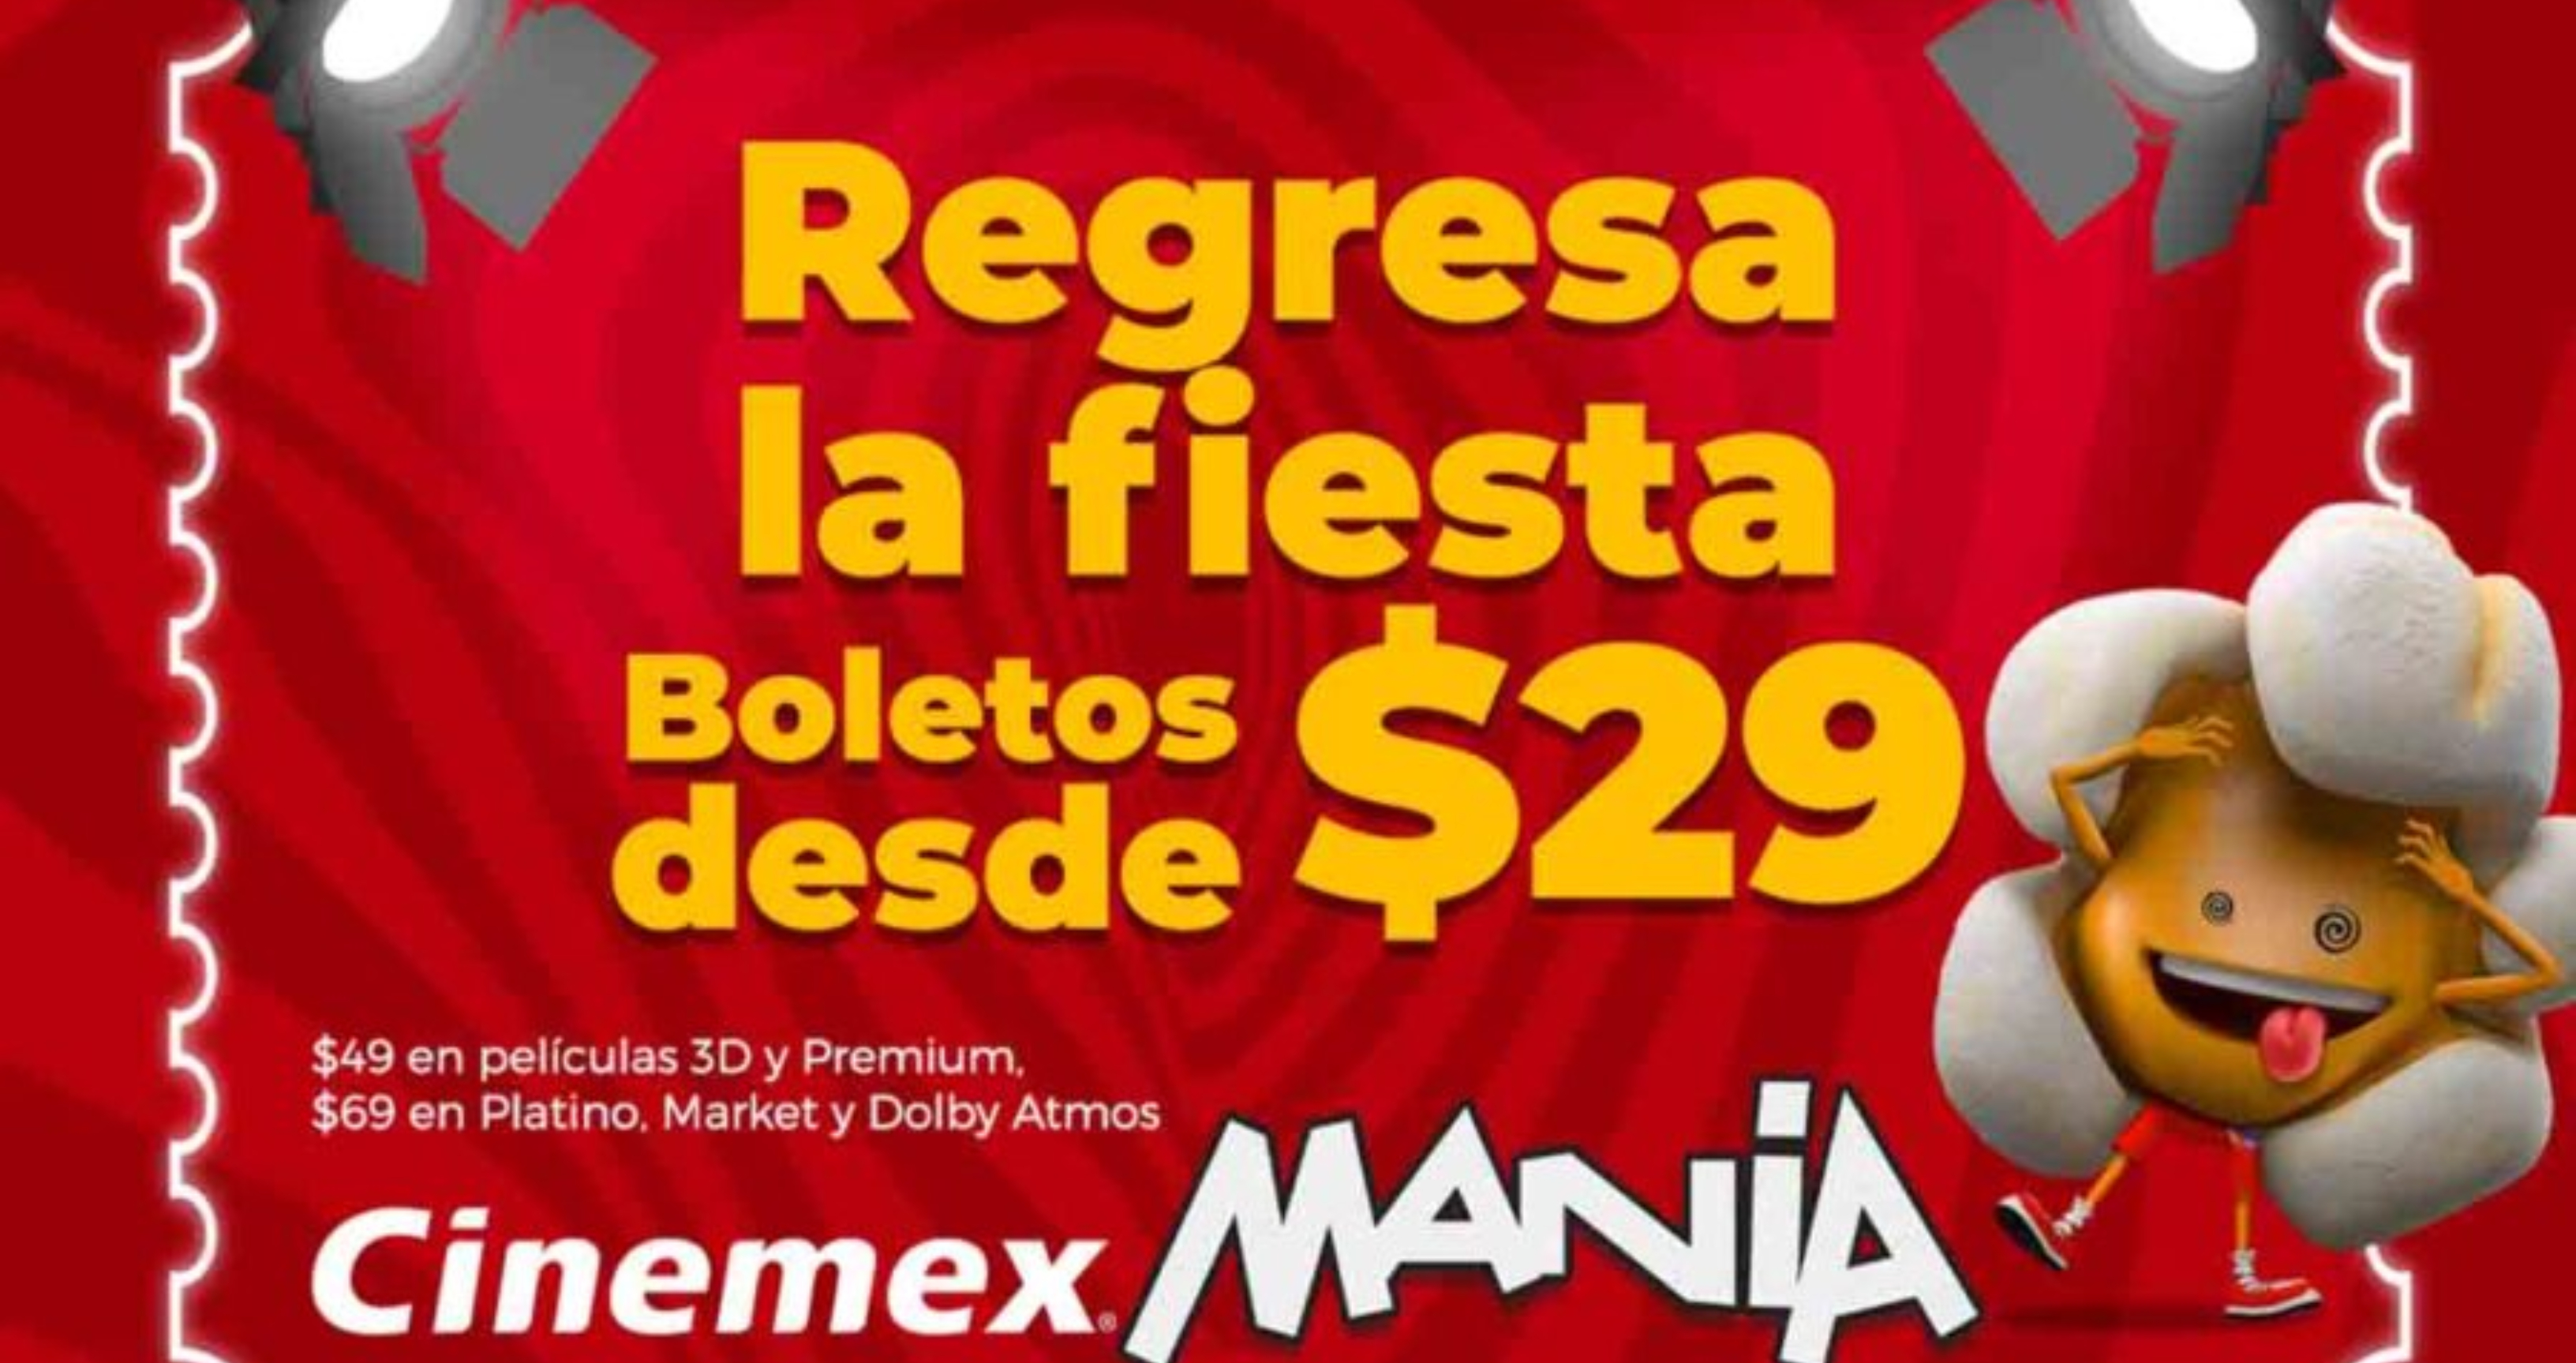 Cinemex vende boletos a $29 pesos, esto es lo que tienes que saber respecto a esta promoción 